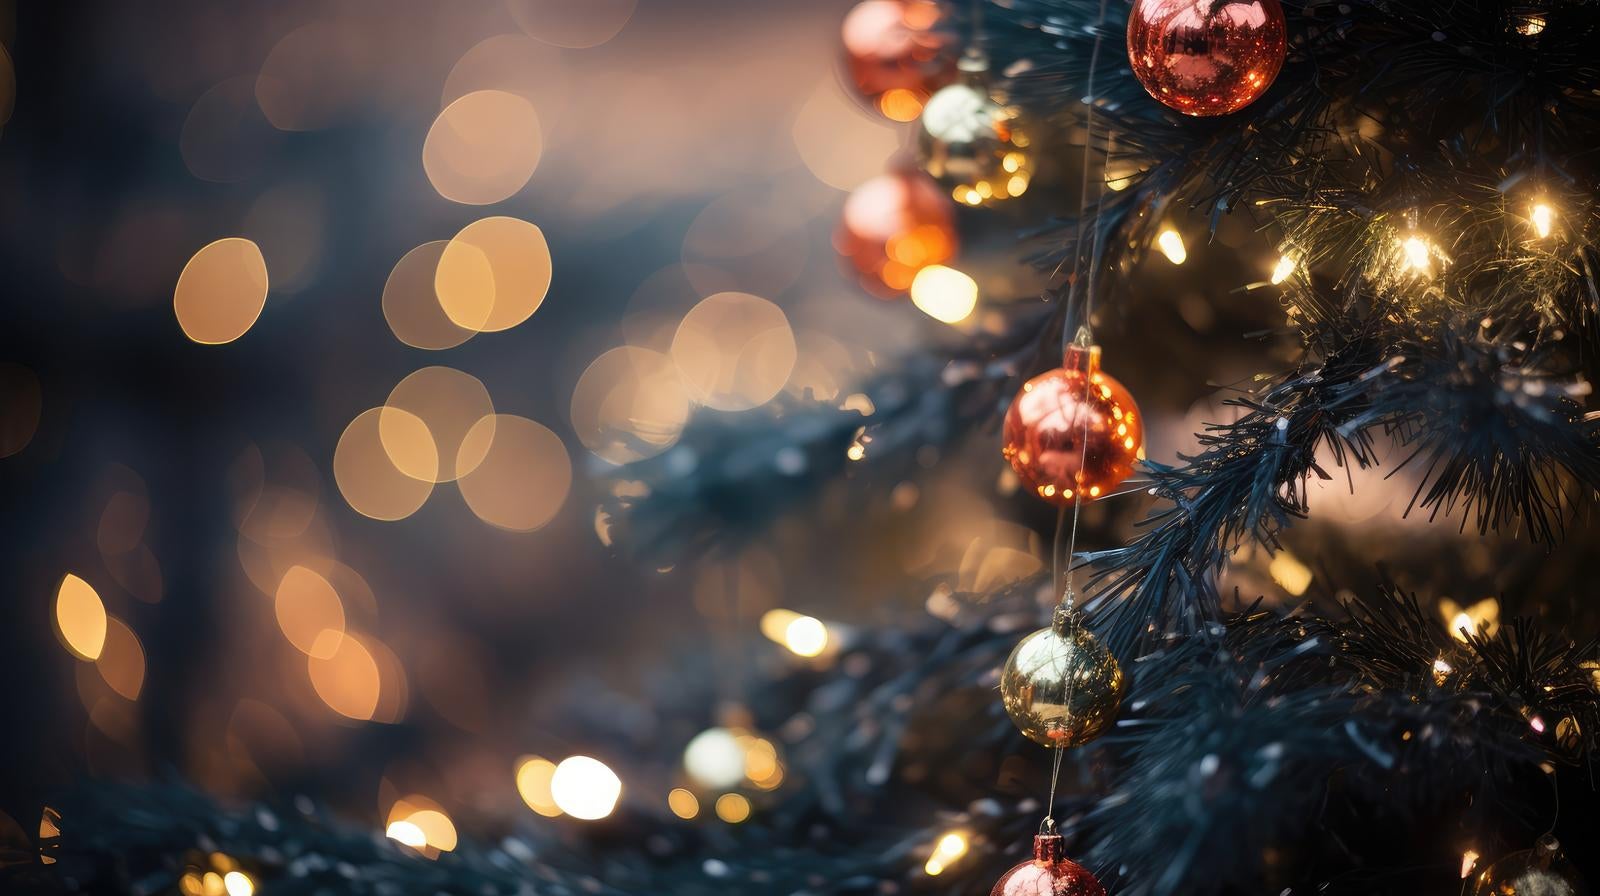 「クリスマスツリーとライトアップの点灯」の写真